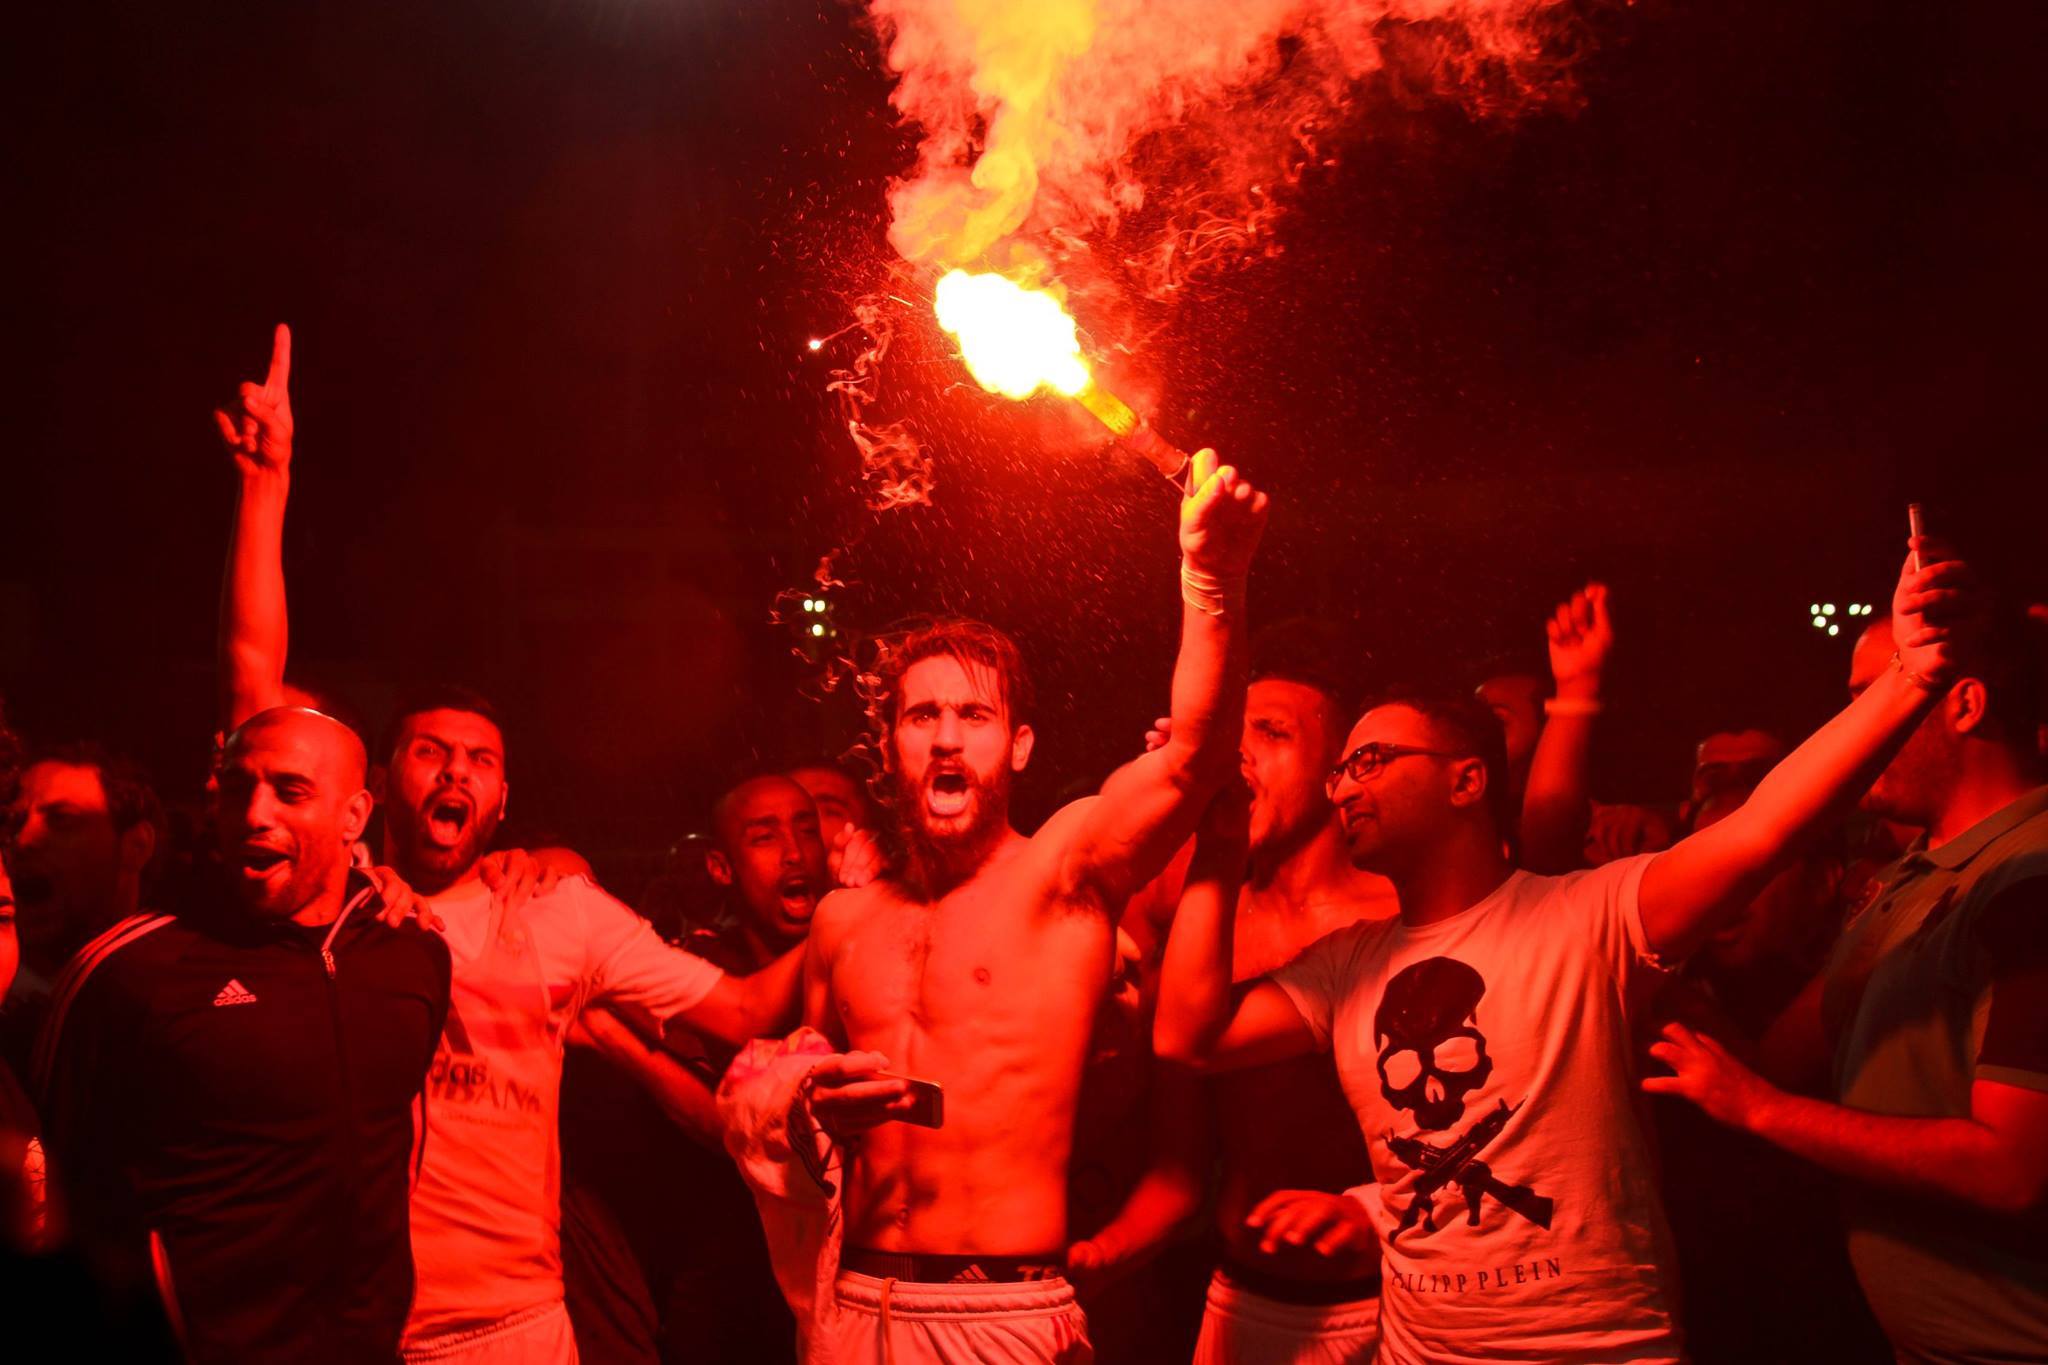 بالفيديو والصور| احتفالات لاعبي الزمالك بالشماريخ بعد اقترابهم من الفوز بالدوري